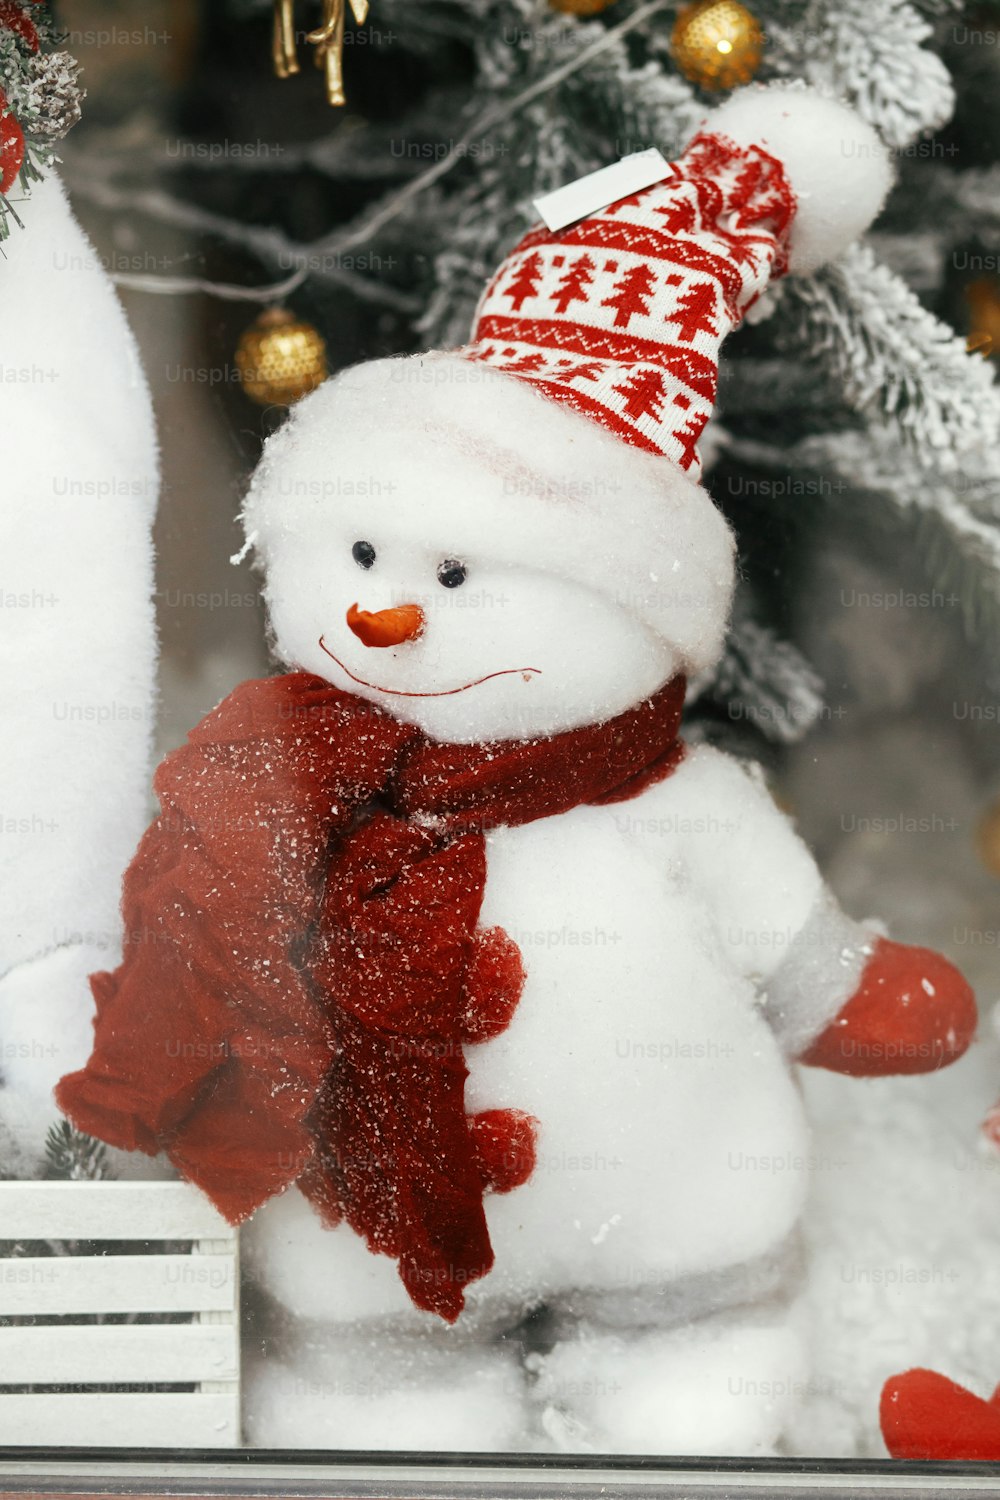 Lindo muñeco de nieve con estilo en sombrero y con bufanda de juguete debajo del árbol de Navidad moderno. Decoración festiva navide�ña para las vacaciones de invierno en la calle de la ciudad europea. ¡Feliz Navidad!